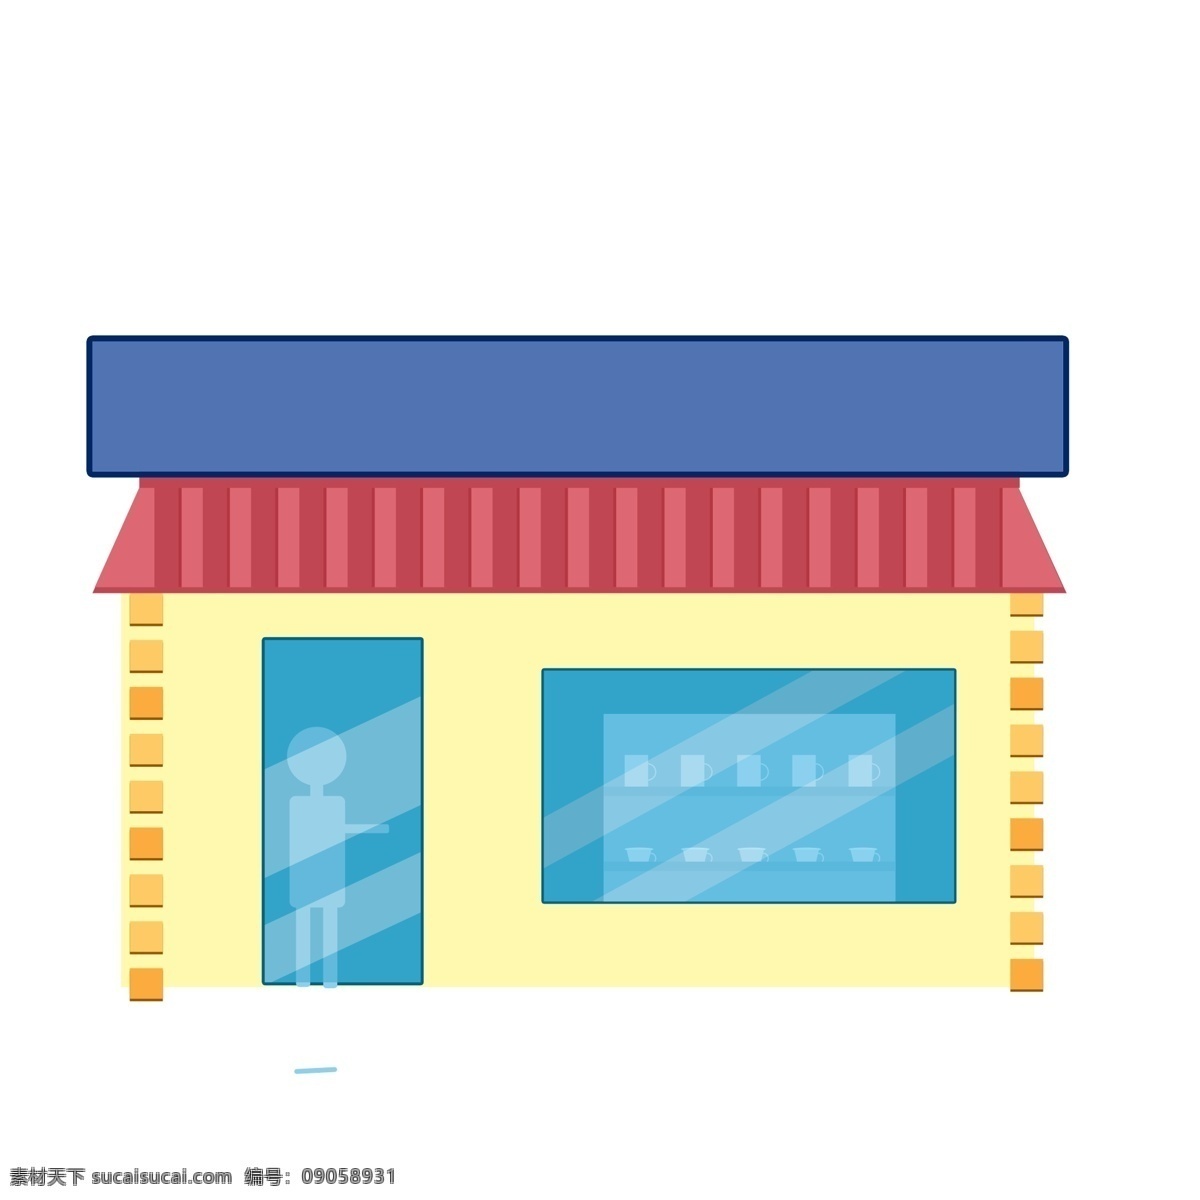 扁平化 卡通 小 商店 商用 元素 清新 彩色 建筑 psd设计 插画元素